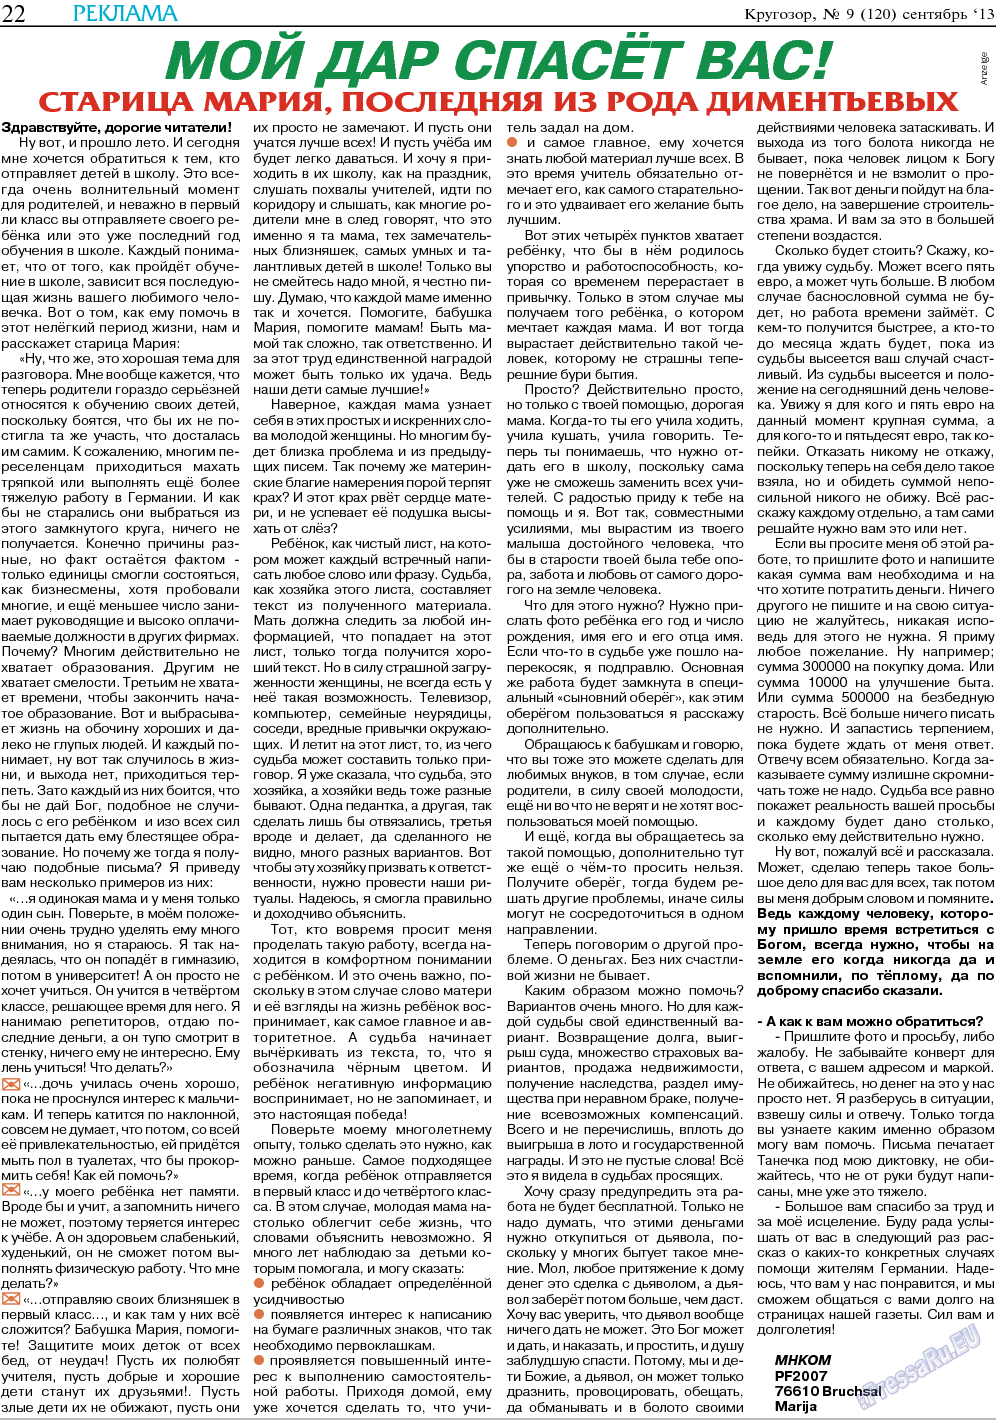 Кругозор, газета. 2013 №9 стр.22